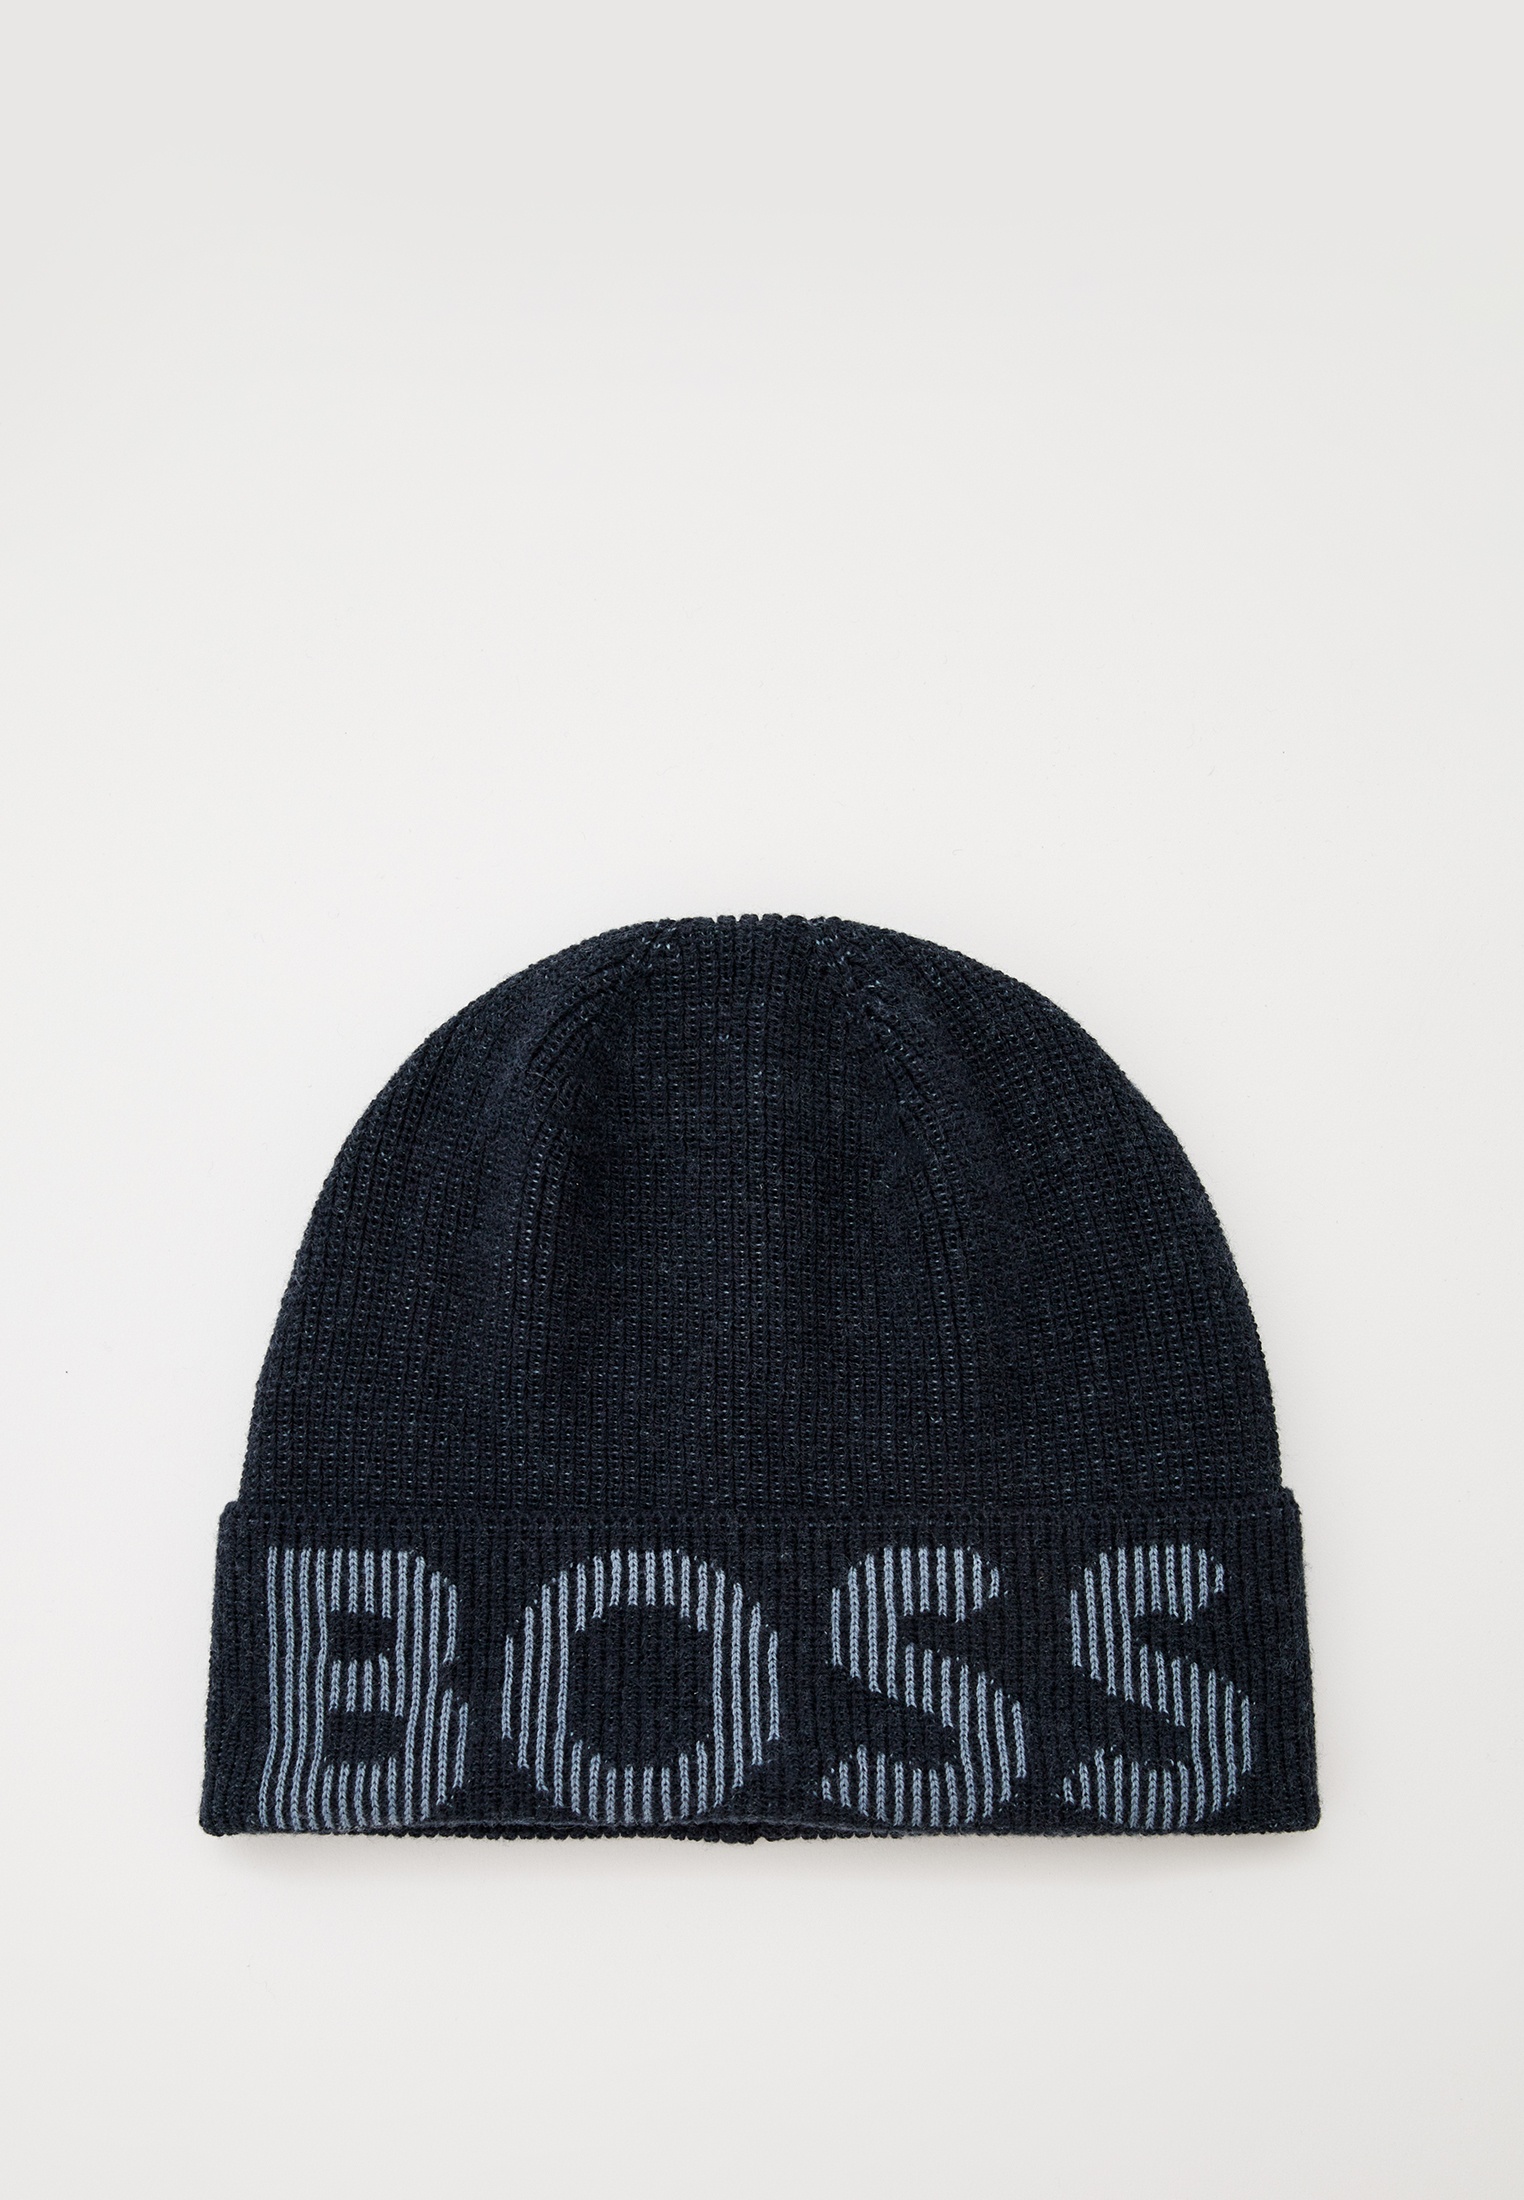 Шапка Boss (Босс) 50495296